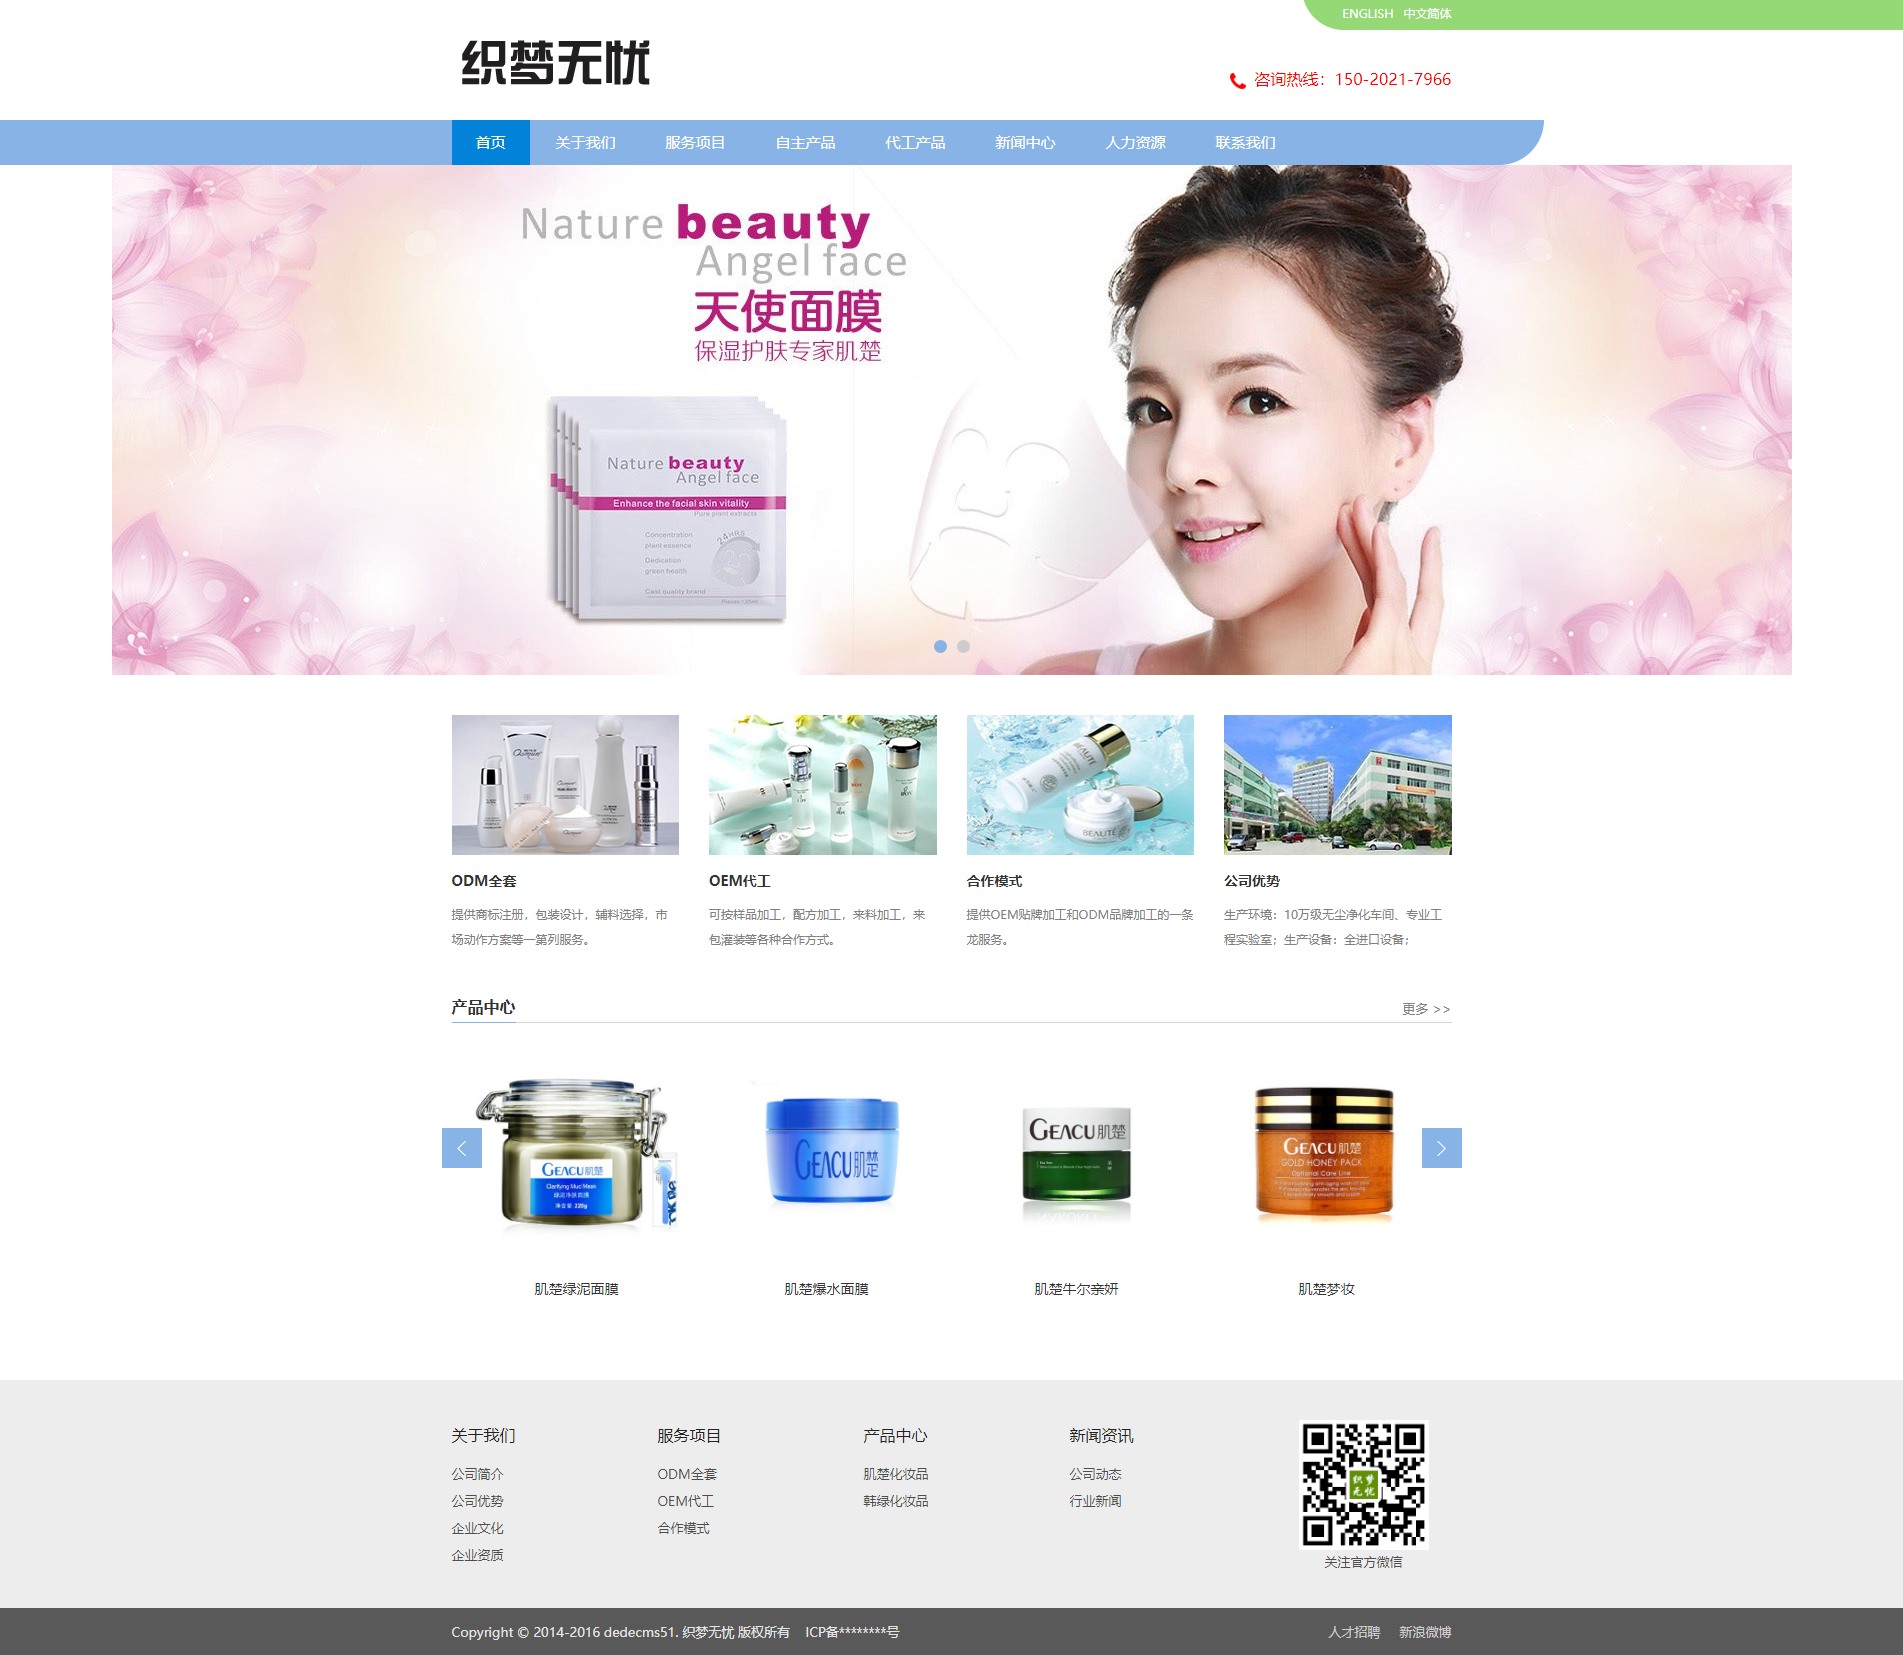 中英双语美容化妆品公司网站官网织梦模板带移动端-学习笔记-橙子系统站